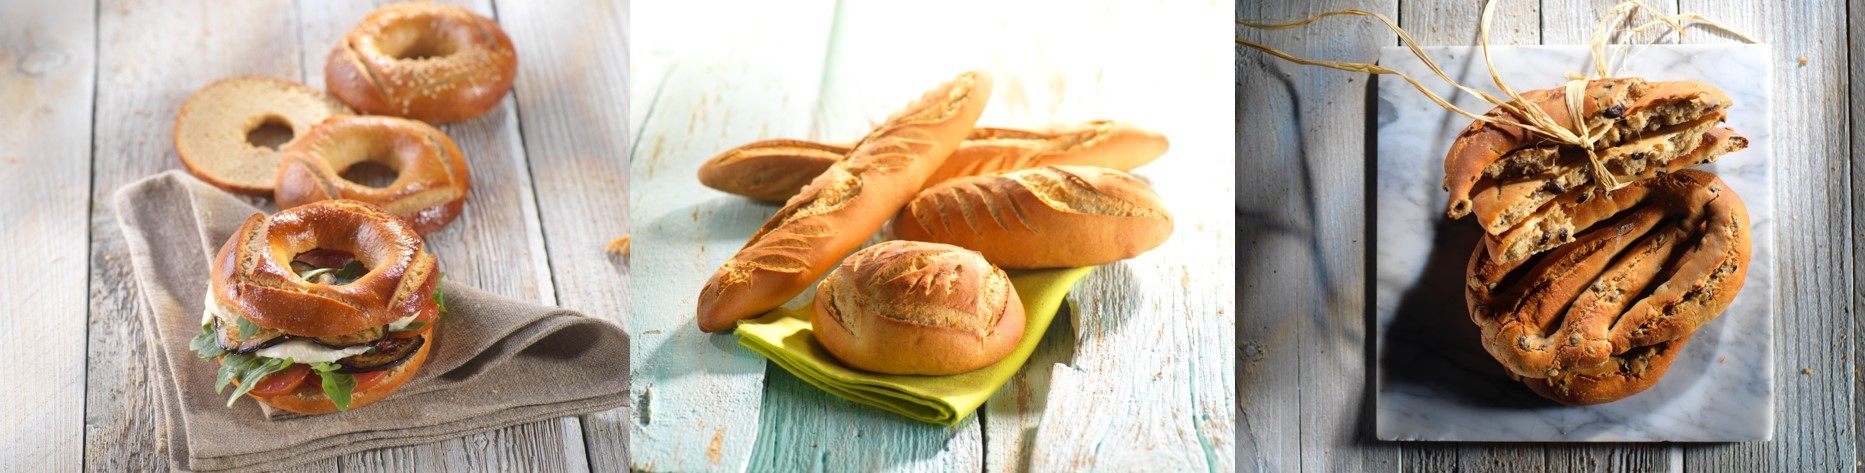 Faire son pain maison avec les farines spéciales - Mon Fournil